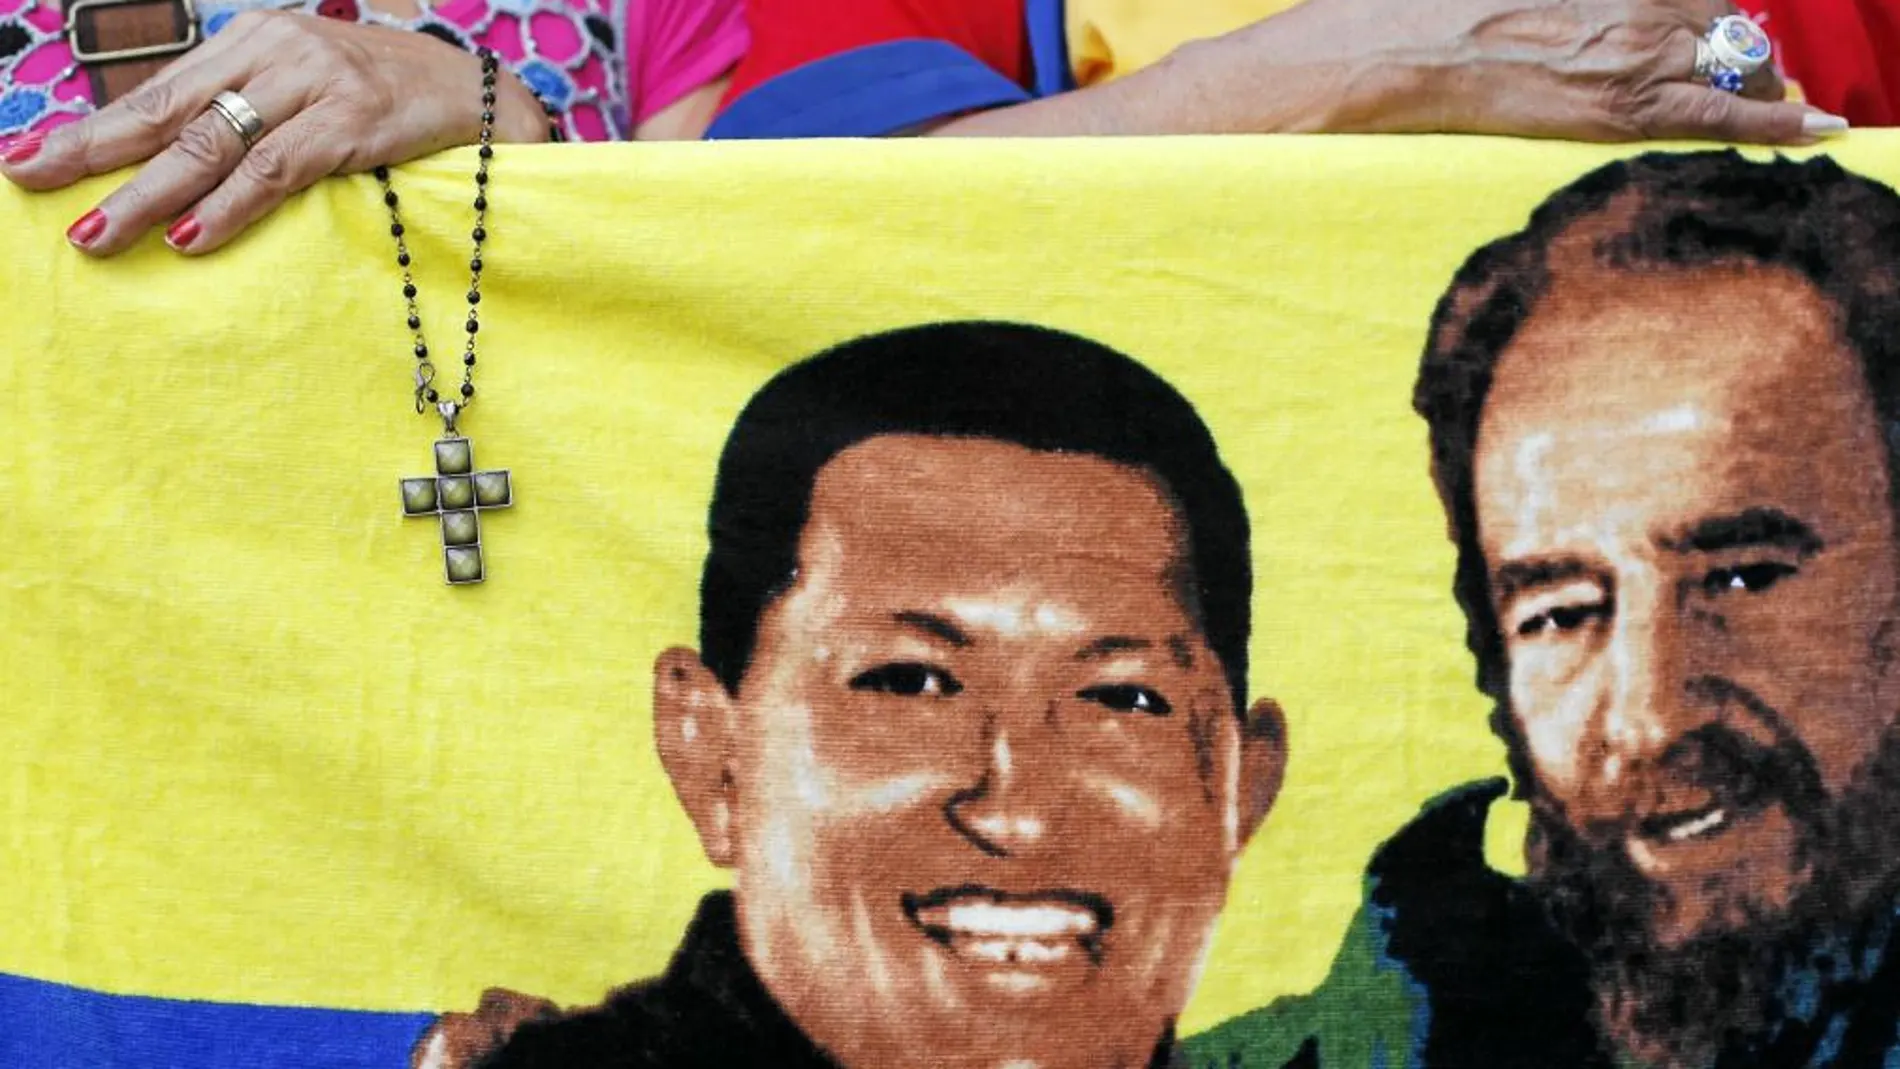 Las muestras de apoyo al presidente venezolano, Hugo Chávez, (en la imagen junto a Fidel) se sucedieron durante la inauguración de la Asamblea Nacional, ayer en Caracas